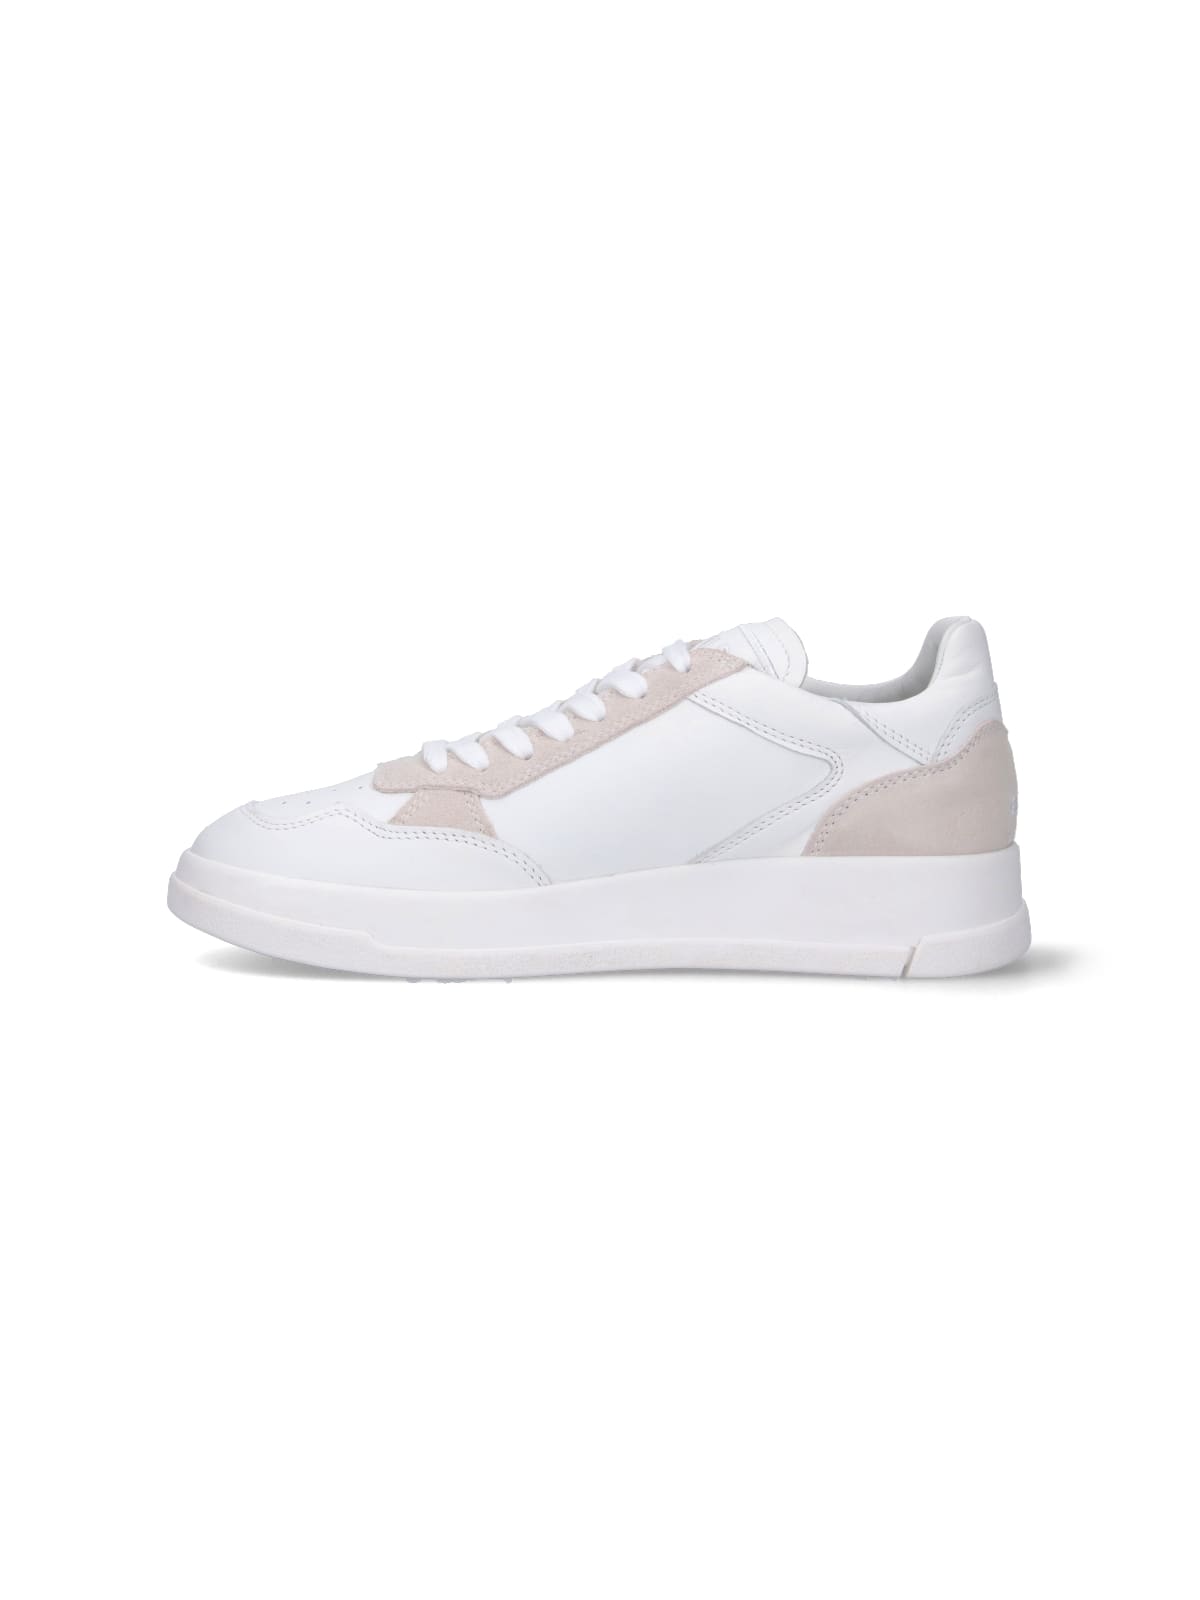 Shop Ghoud Tweener Low Sneakers In White